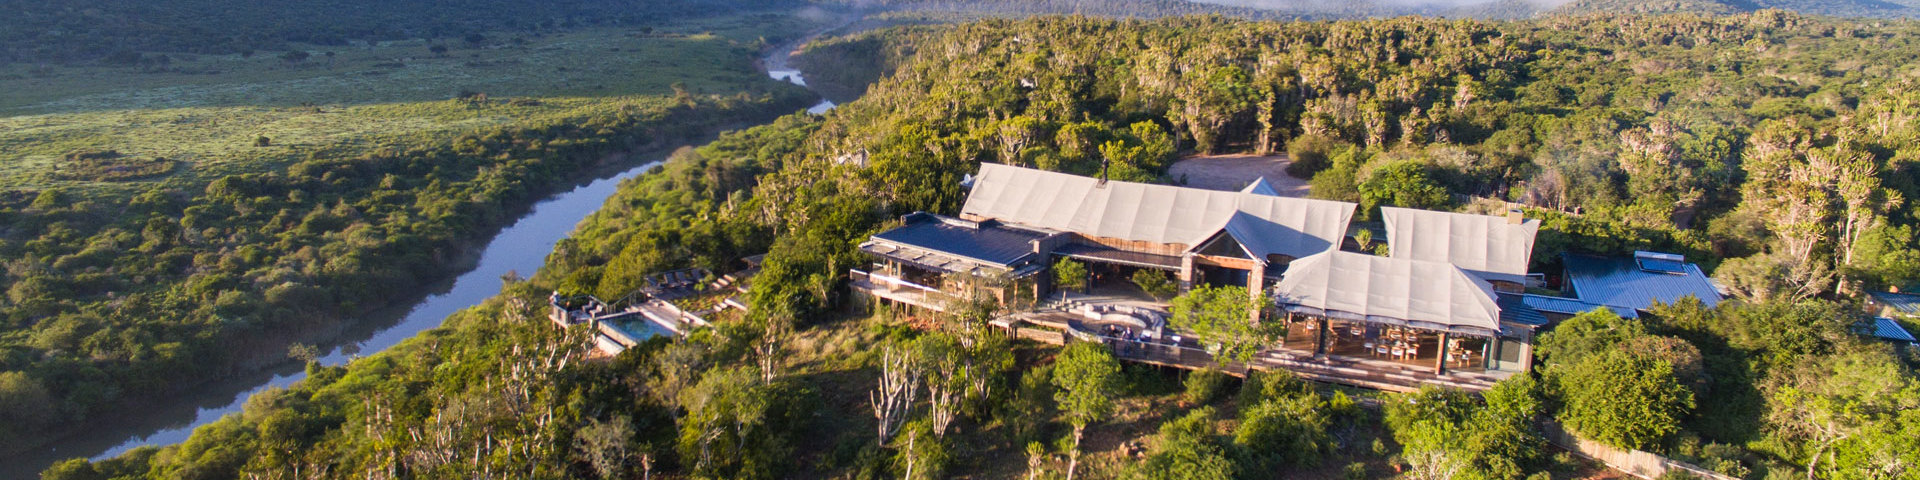 Kariega Game Reserve Aerial View